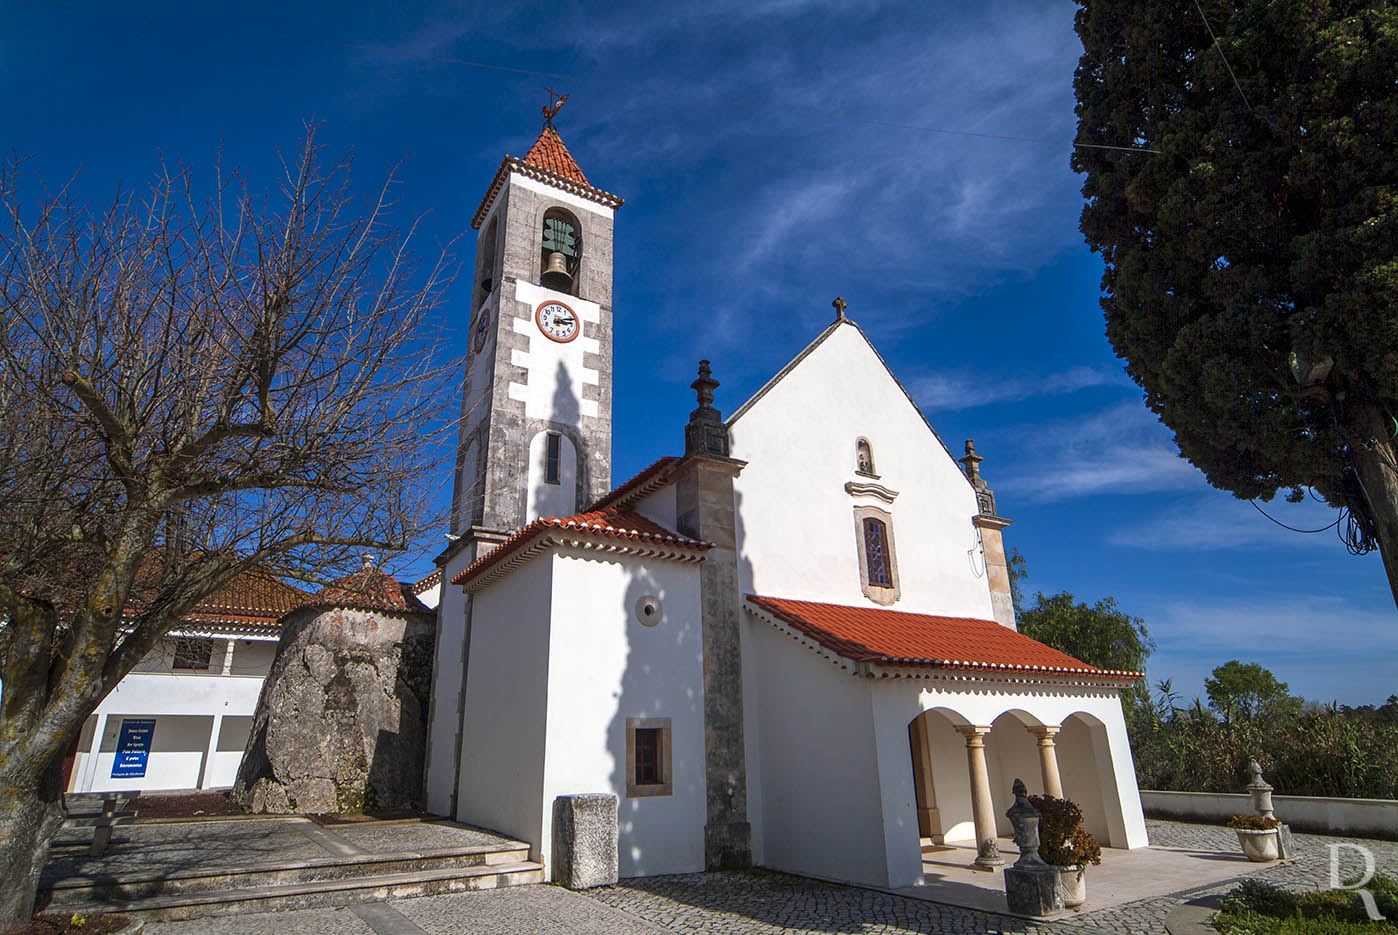 Igreja de Santa Maria Madalena, paroquial de Alcobertas e meglito-capela adjacente (Imvel de Interesse Pblico)